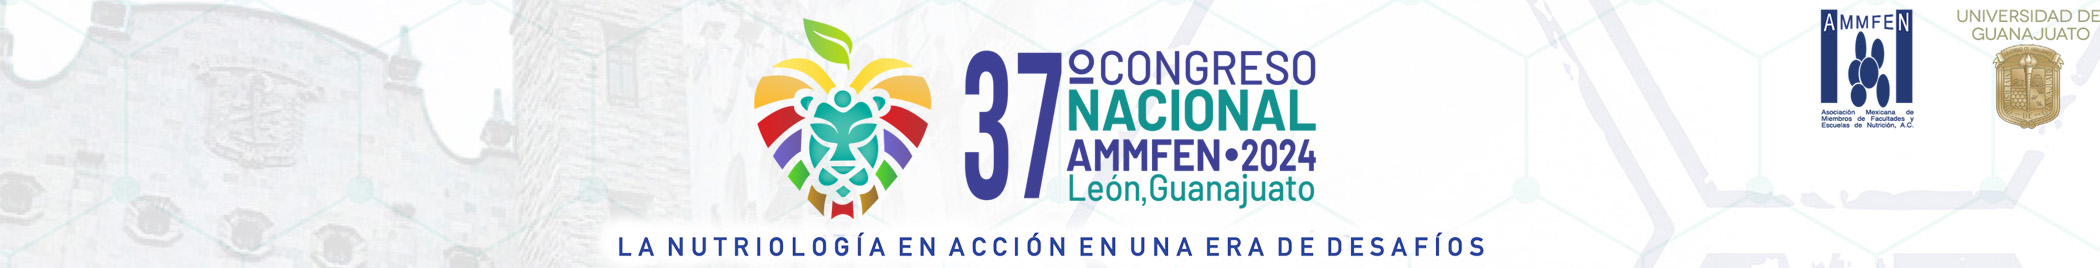 Trigésimo séptimo Congreso Nacional AMMFEN, La nutriología en acción en una era de desafíos